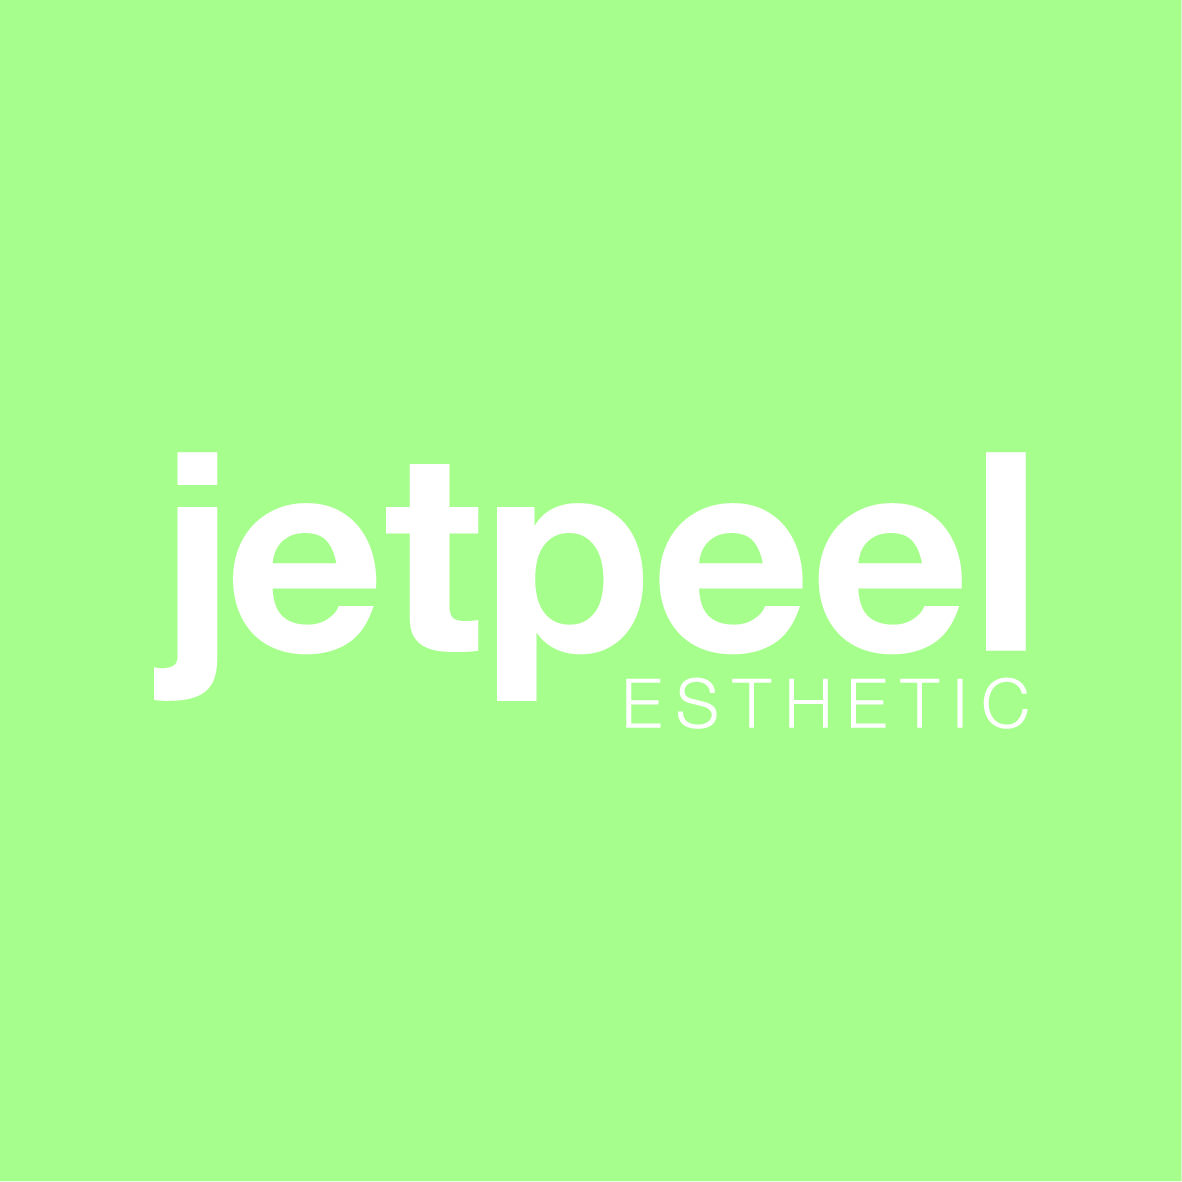 logo_jetpeel_esthetic